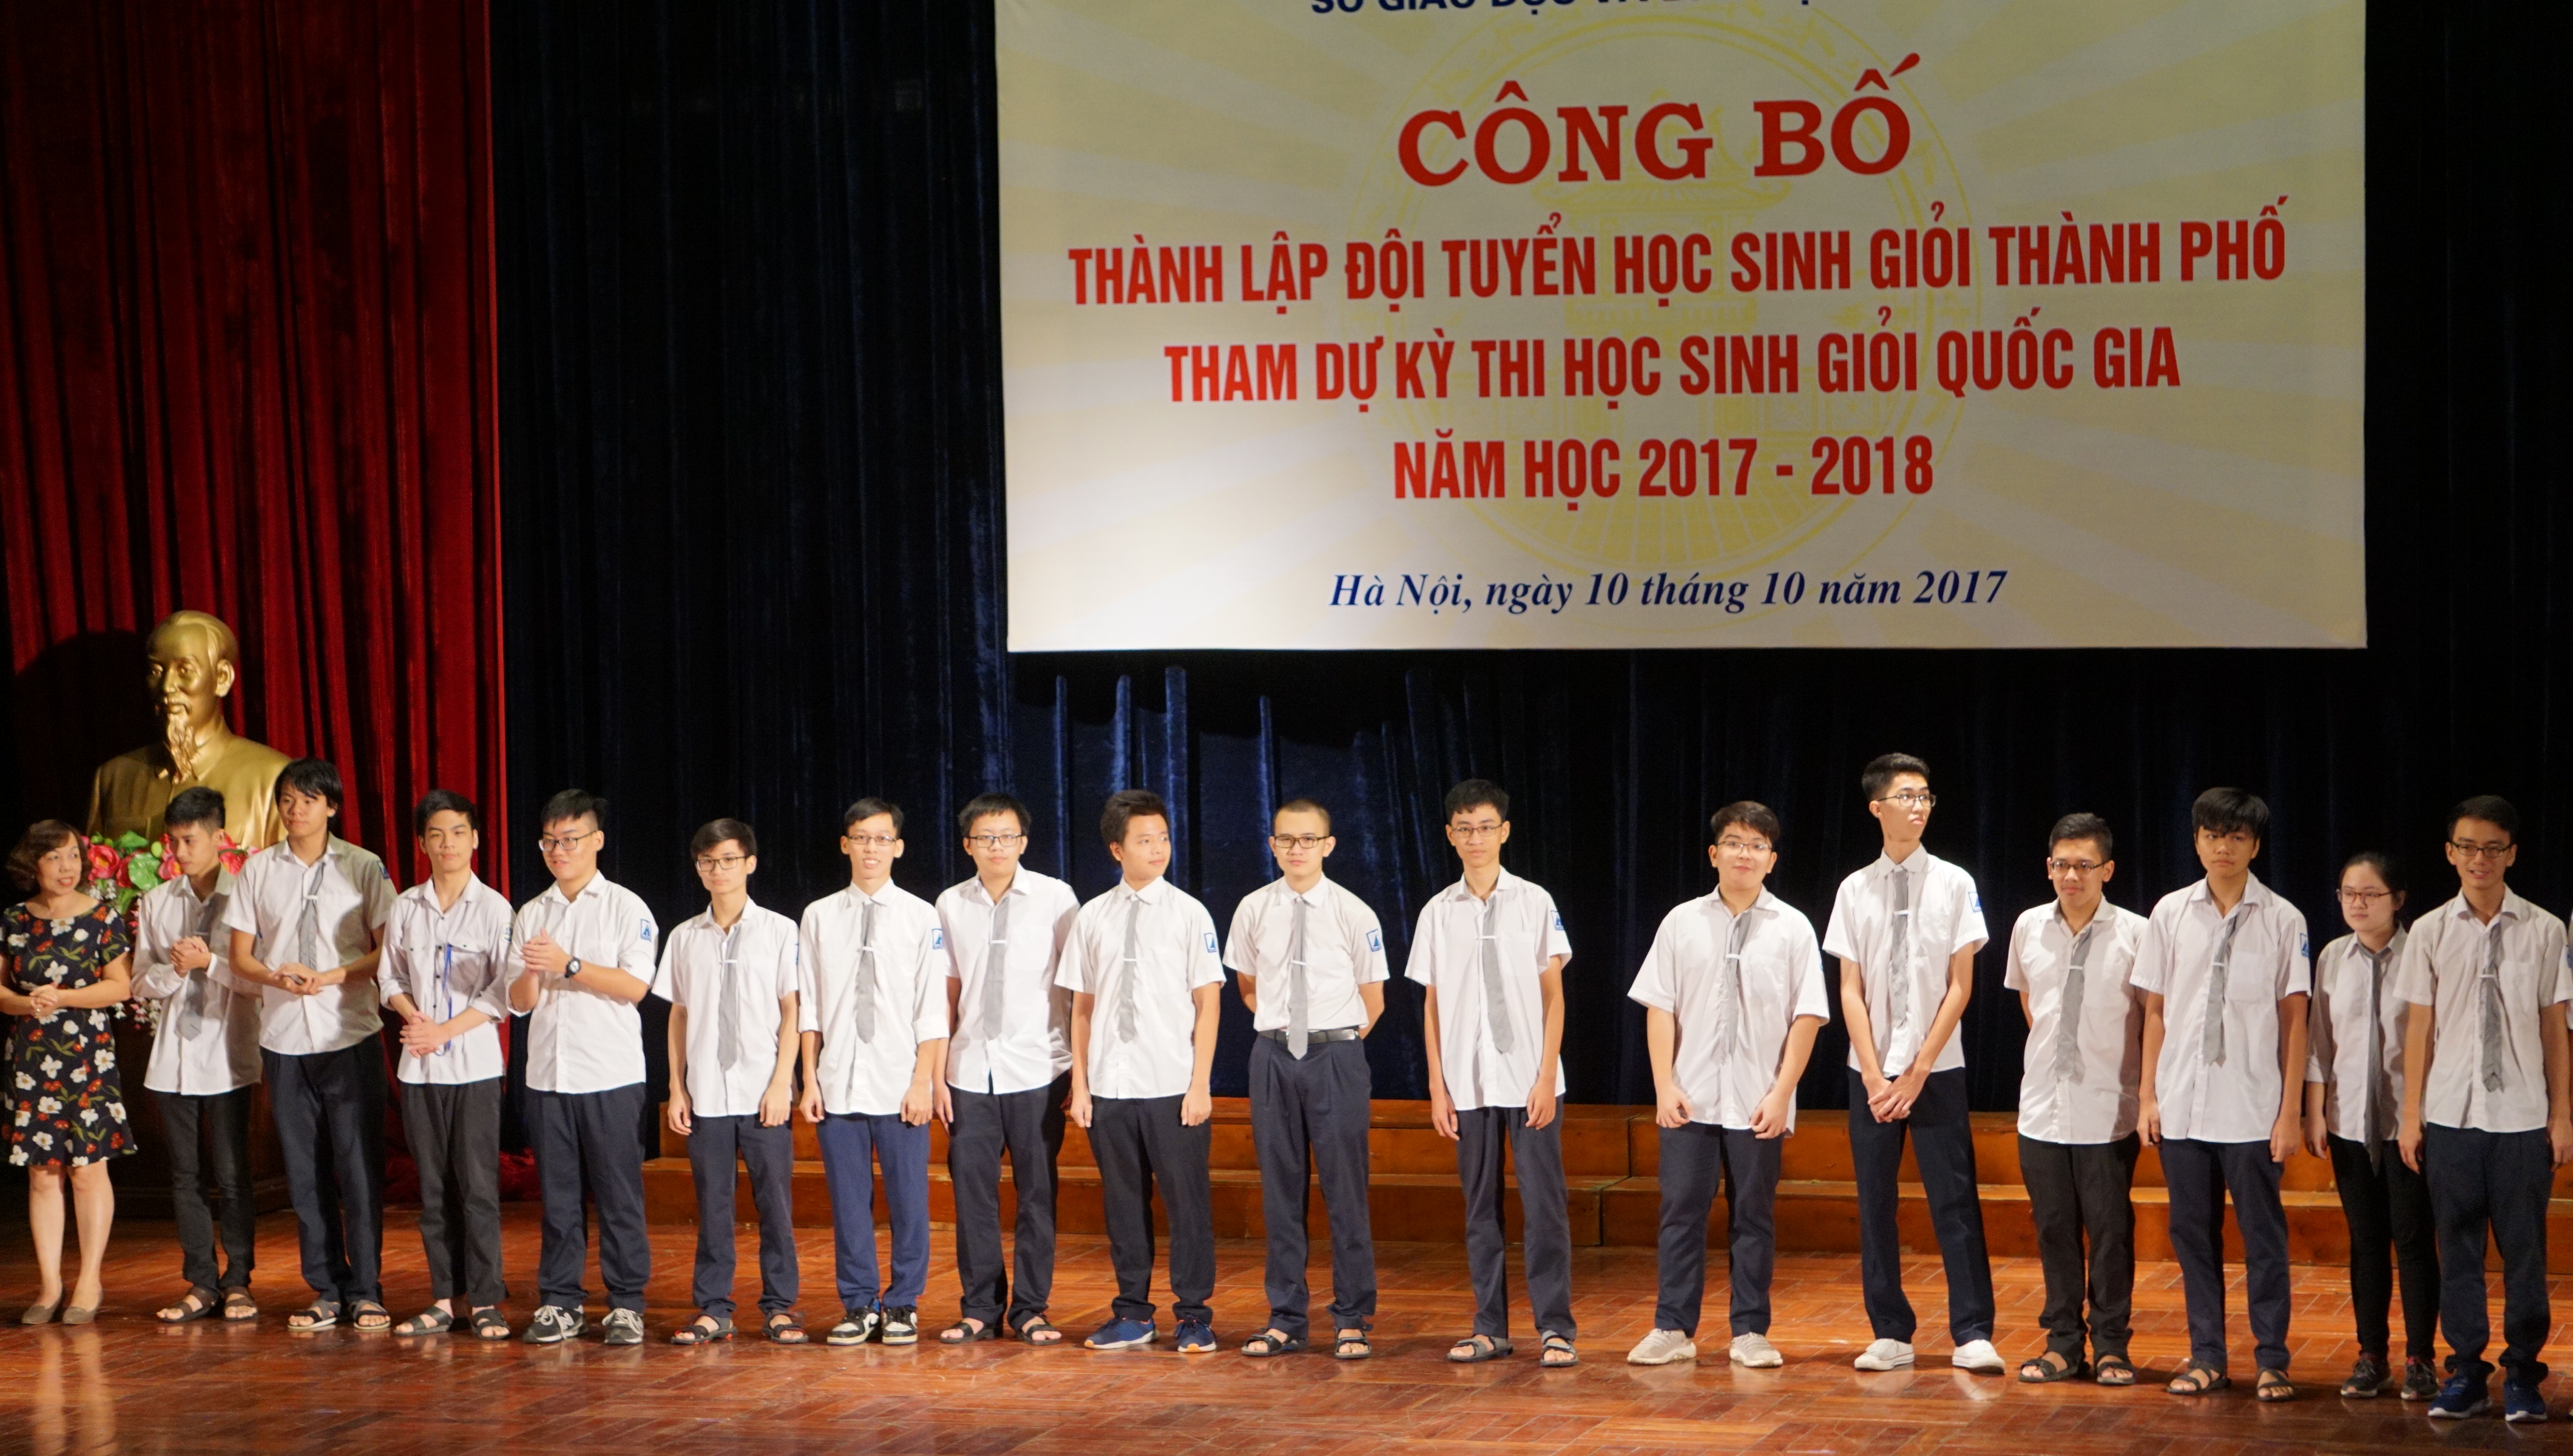 Hà Nội có 181 thí sinh dự thi học sinh giỏi quốc gia 2017 – 2018